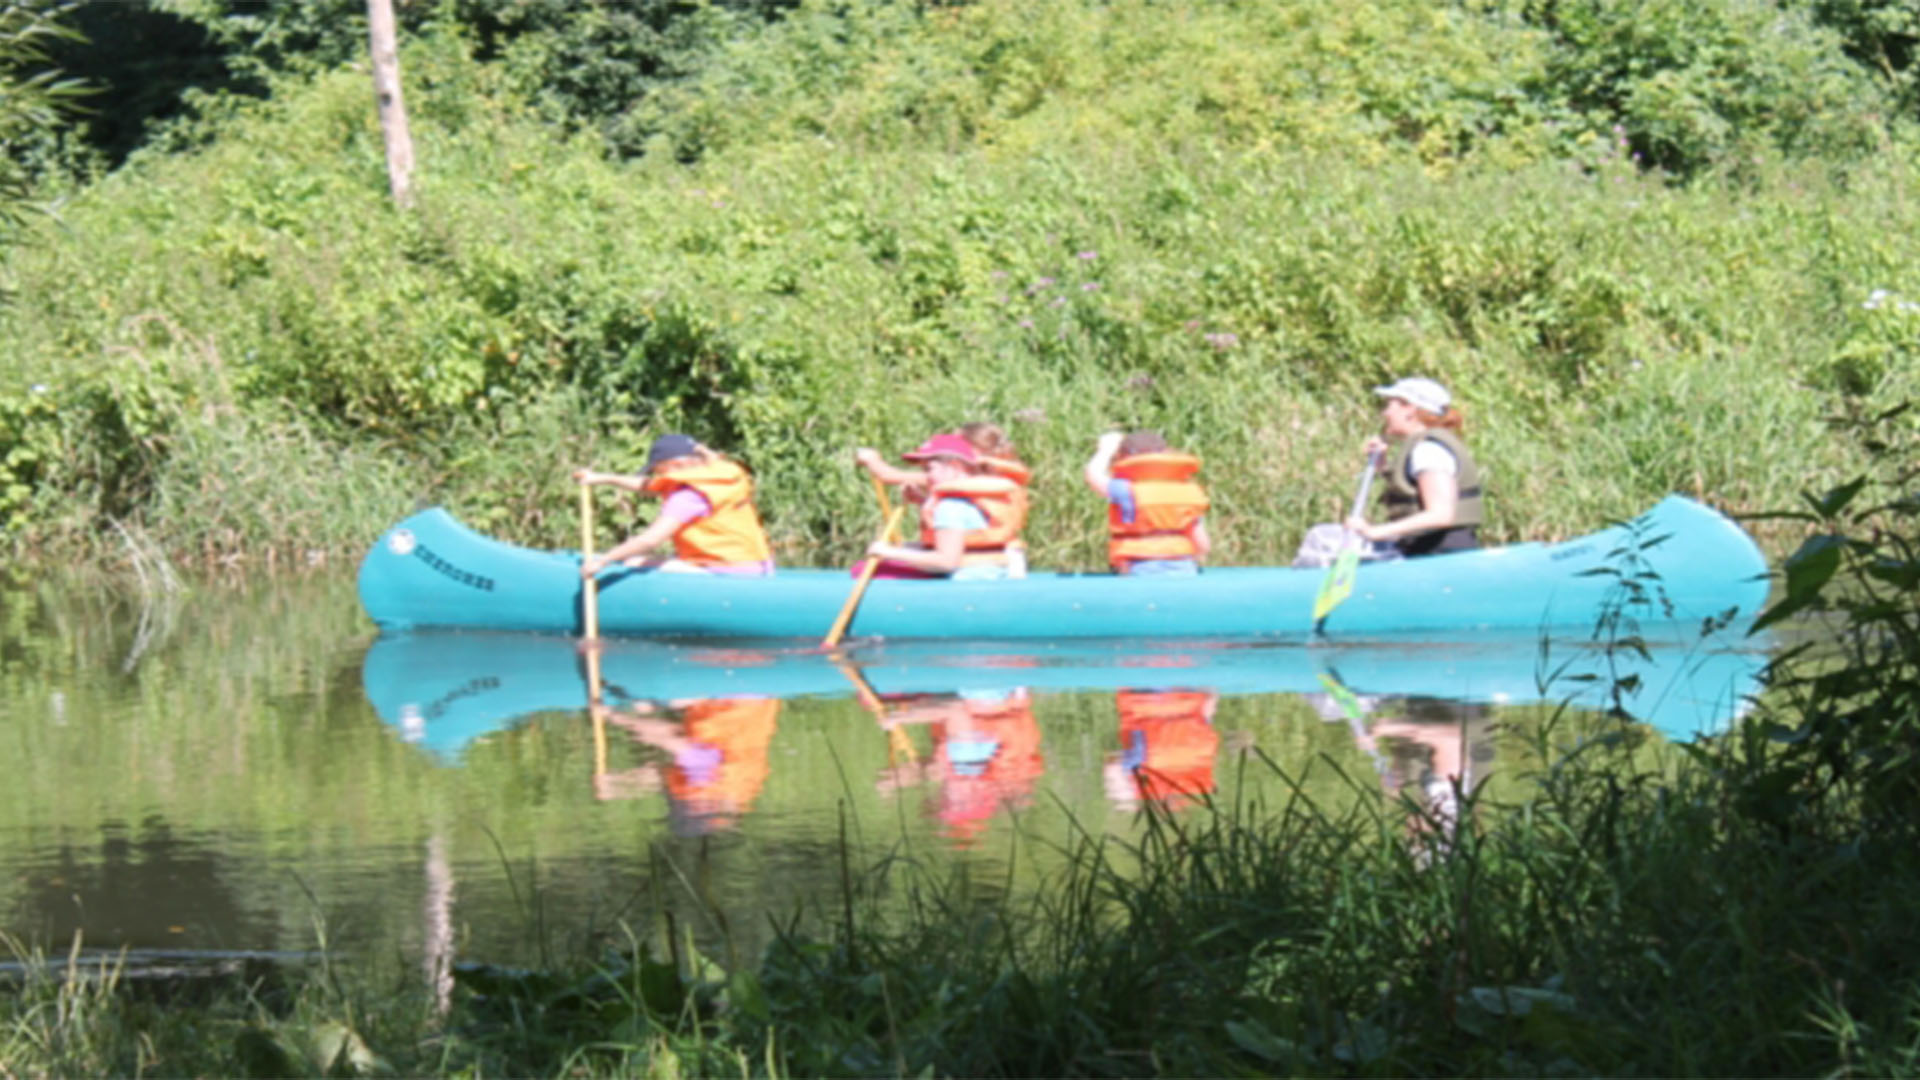 Kinder stzen in einem Kanu und paddeln